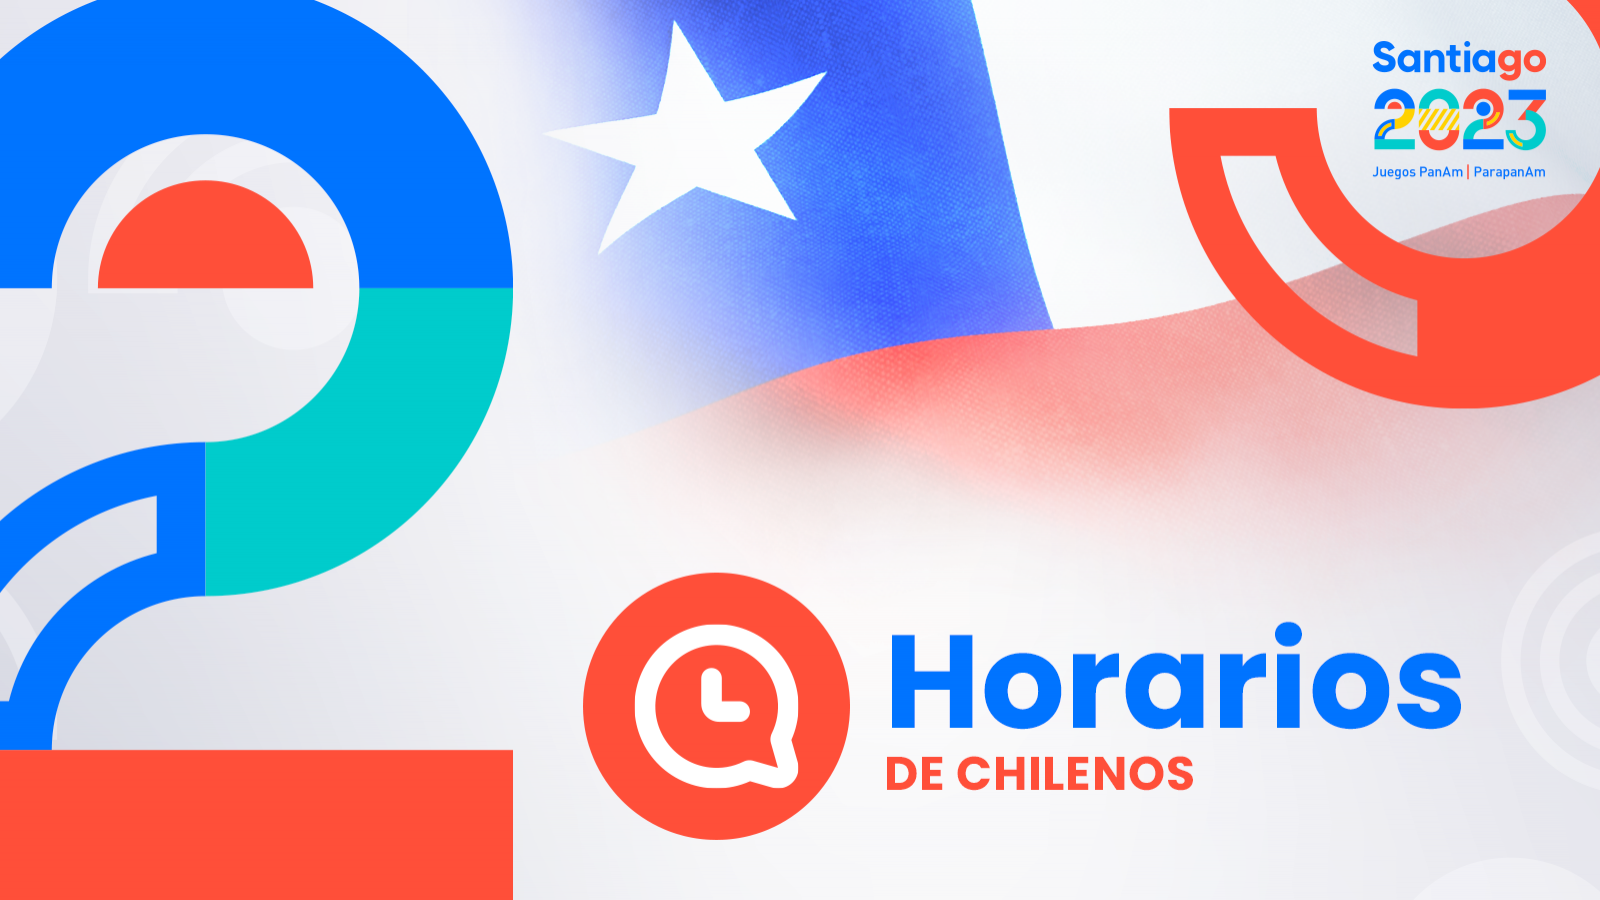 HORARIOS de chilenos en Santiago 2023: viernes 27 de octubre